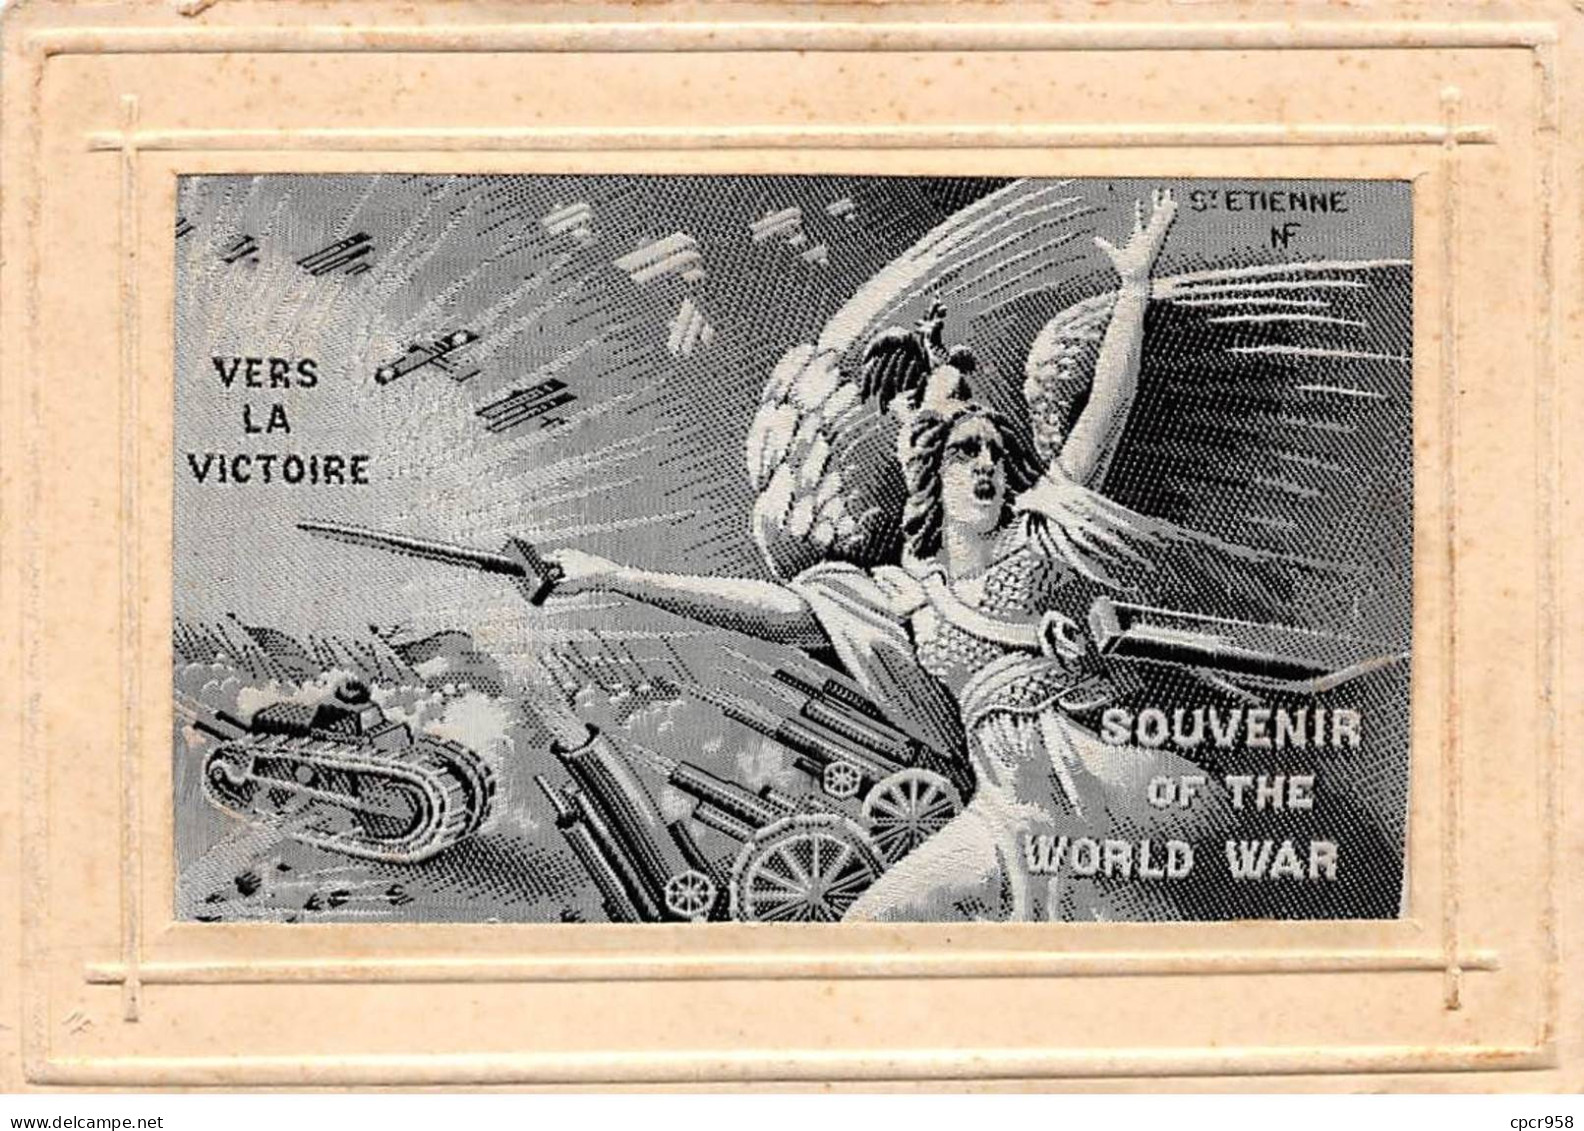 Brodées - N°90853 - Vers La Victoire - Souvenir Of The World War - Carte Tissée Soie.st Etienne - Brodées